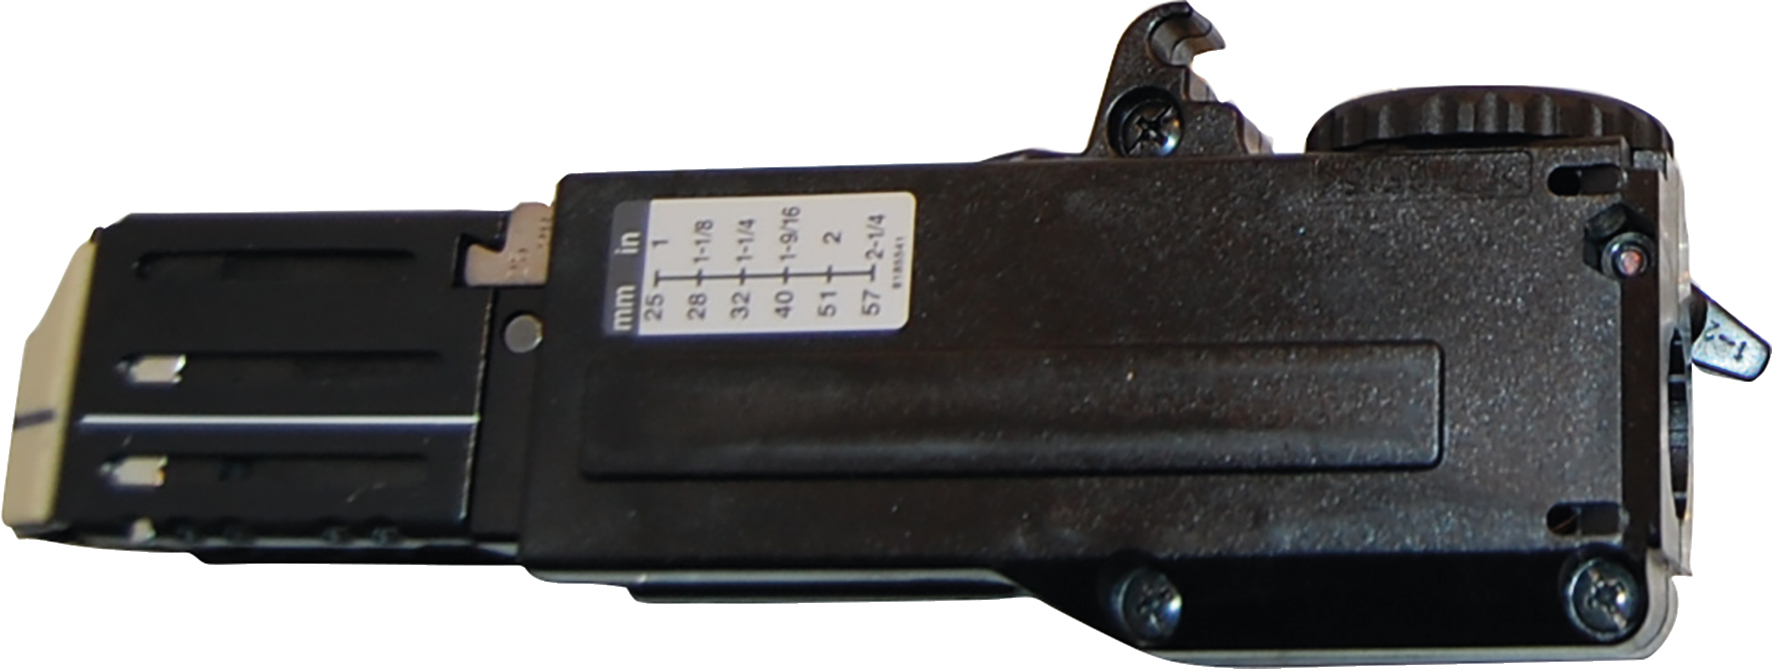 Schraubvorsatz 194383-9 5mm-141